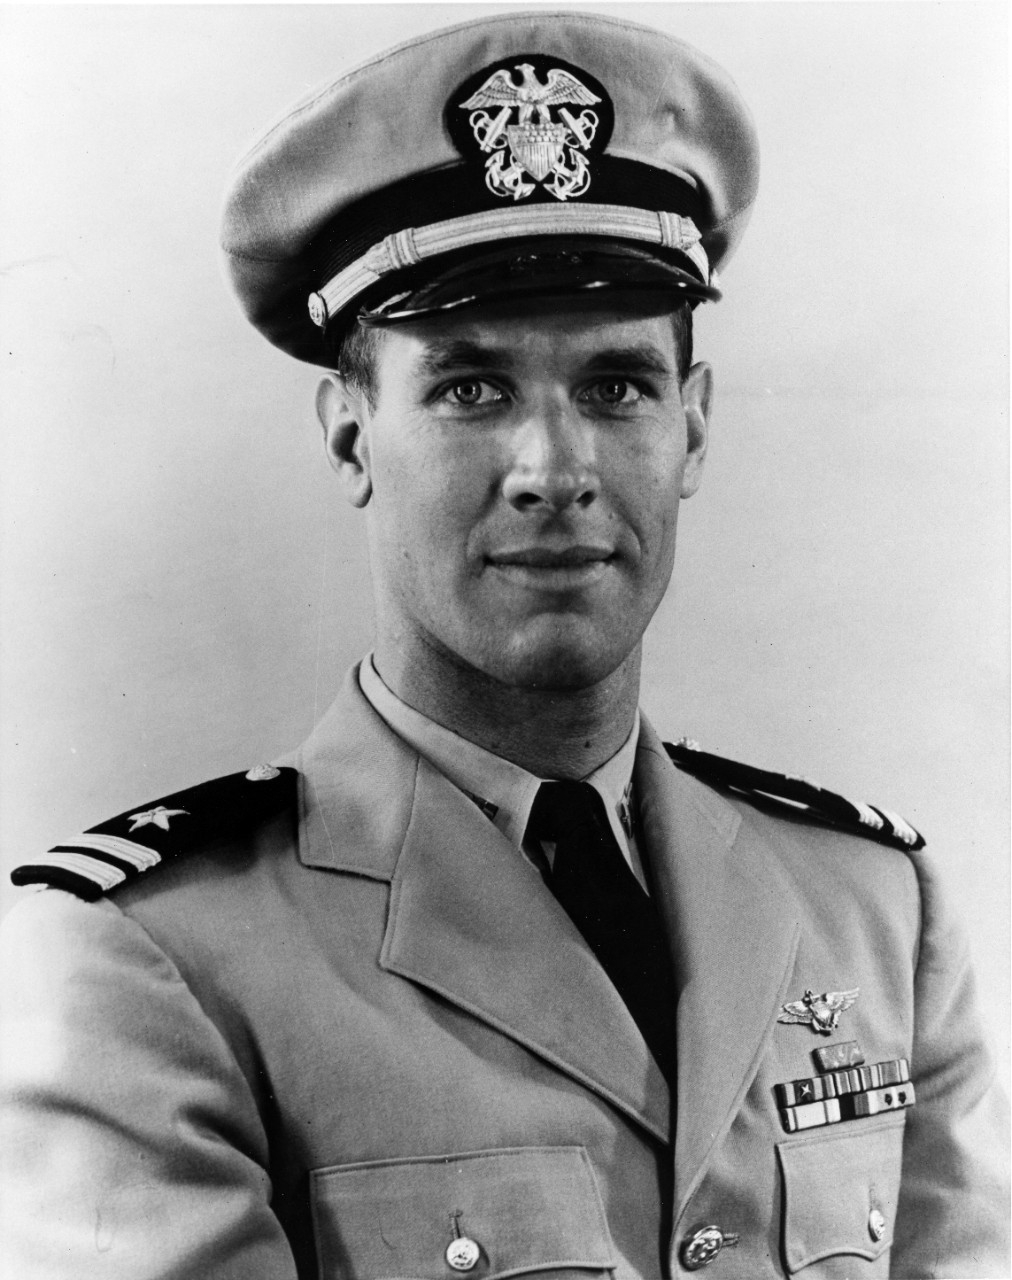 Lieutenant Thomas J. Hudner, Jr.